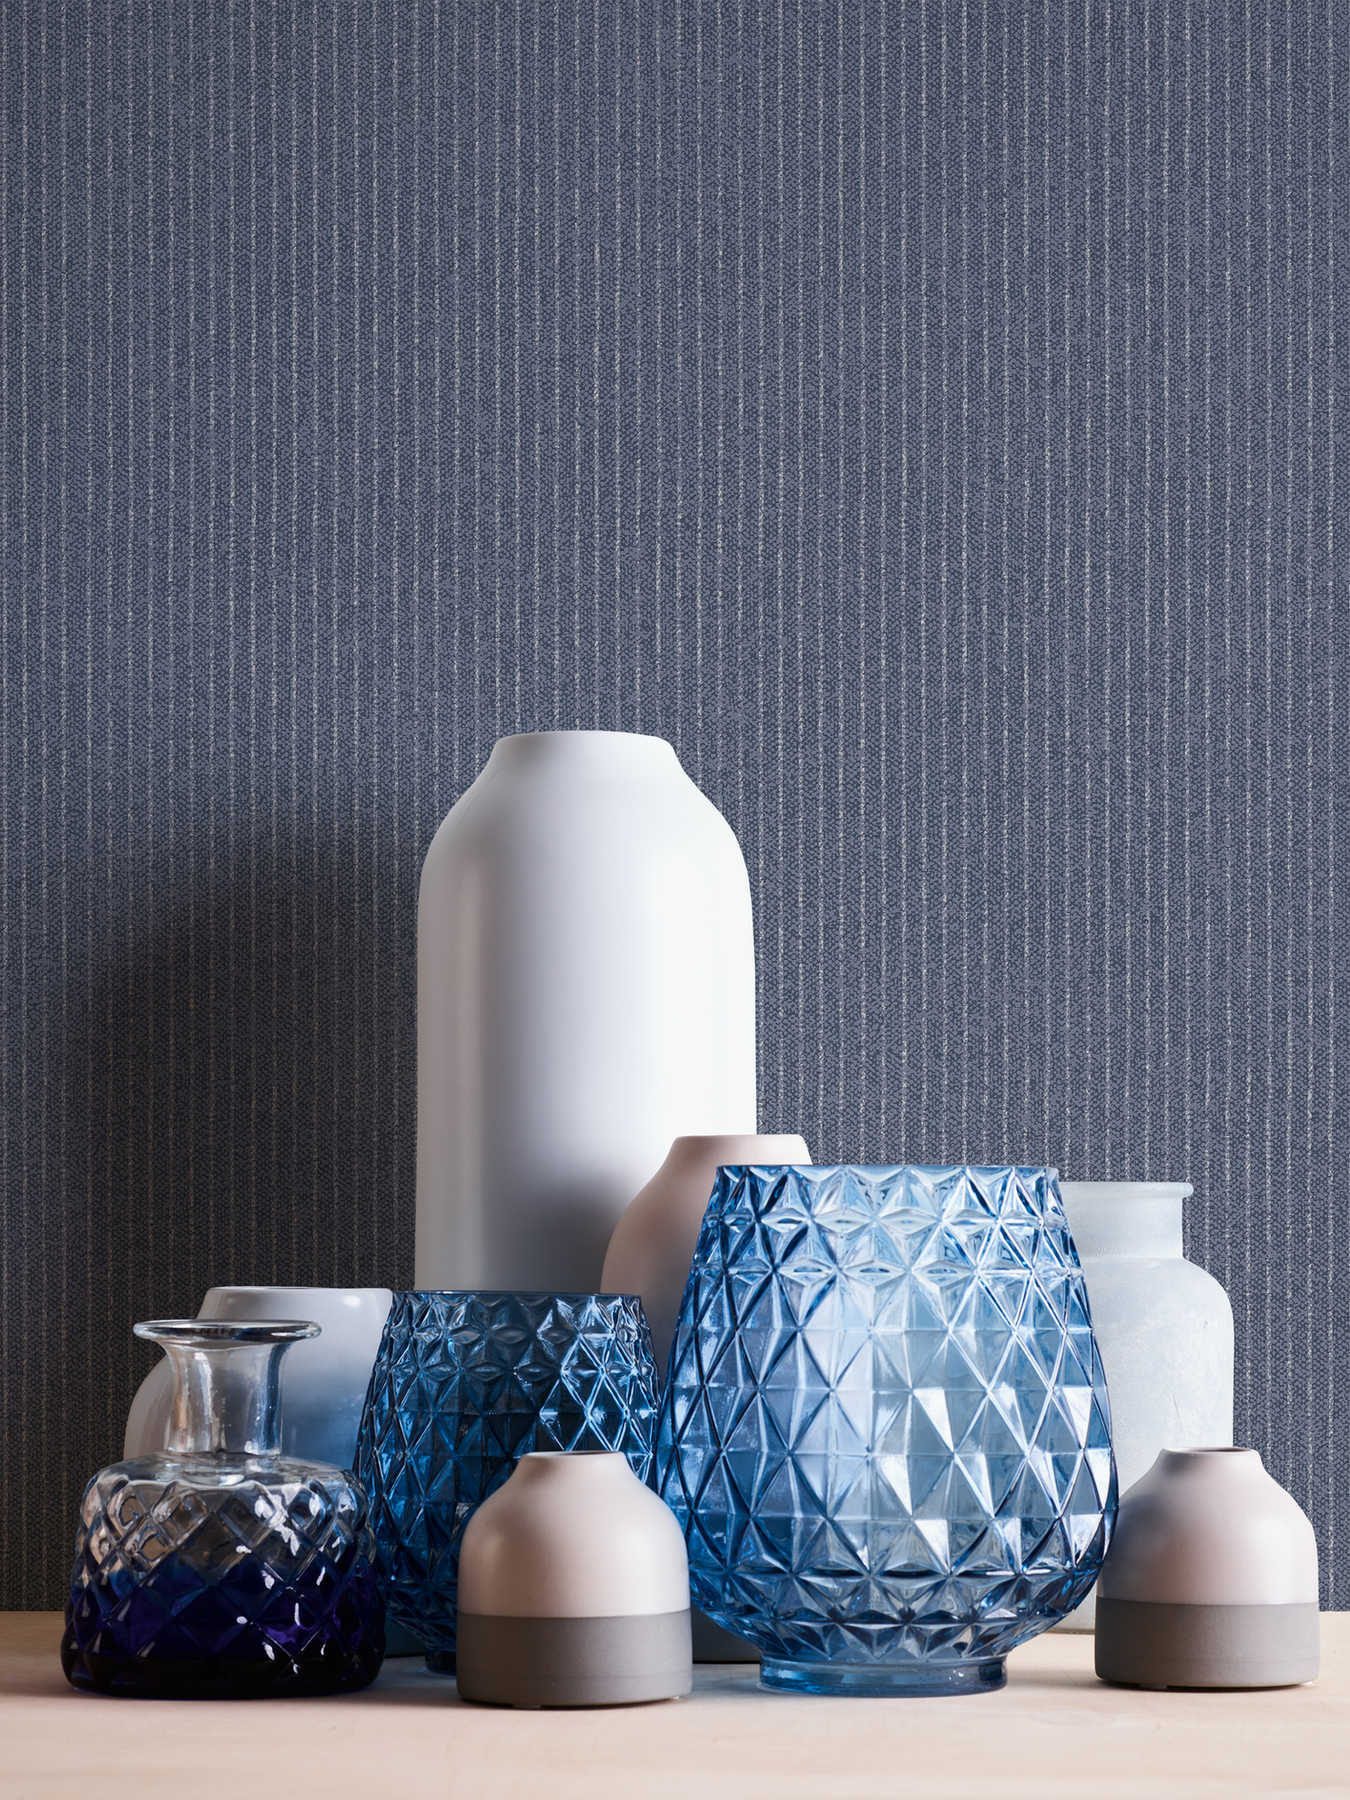             Linierte Tapete schmale Streifen im Textil-Look – Blau
        